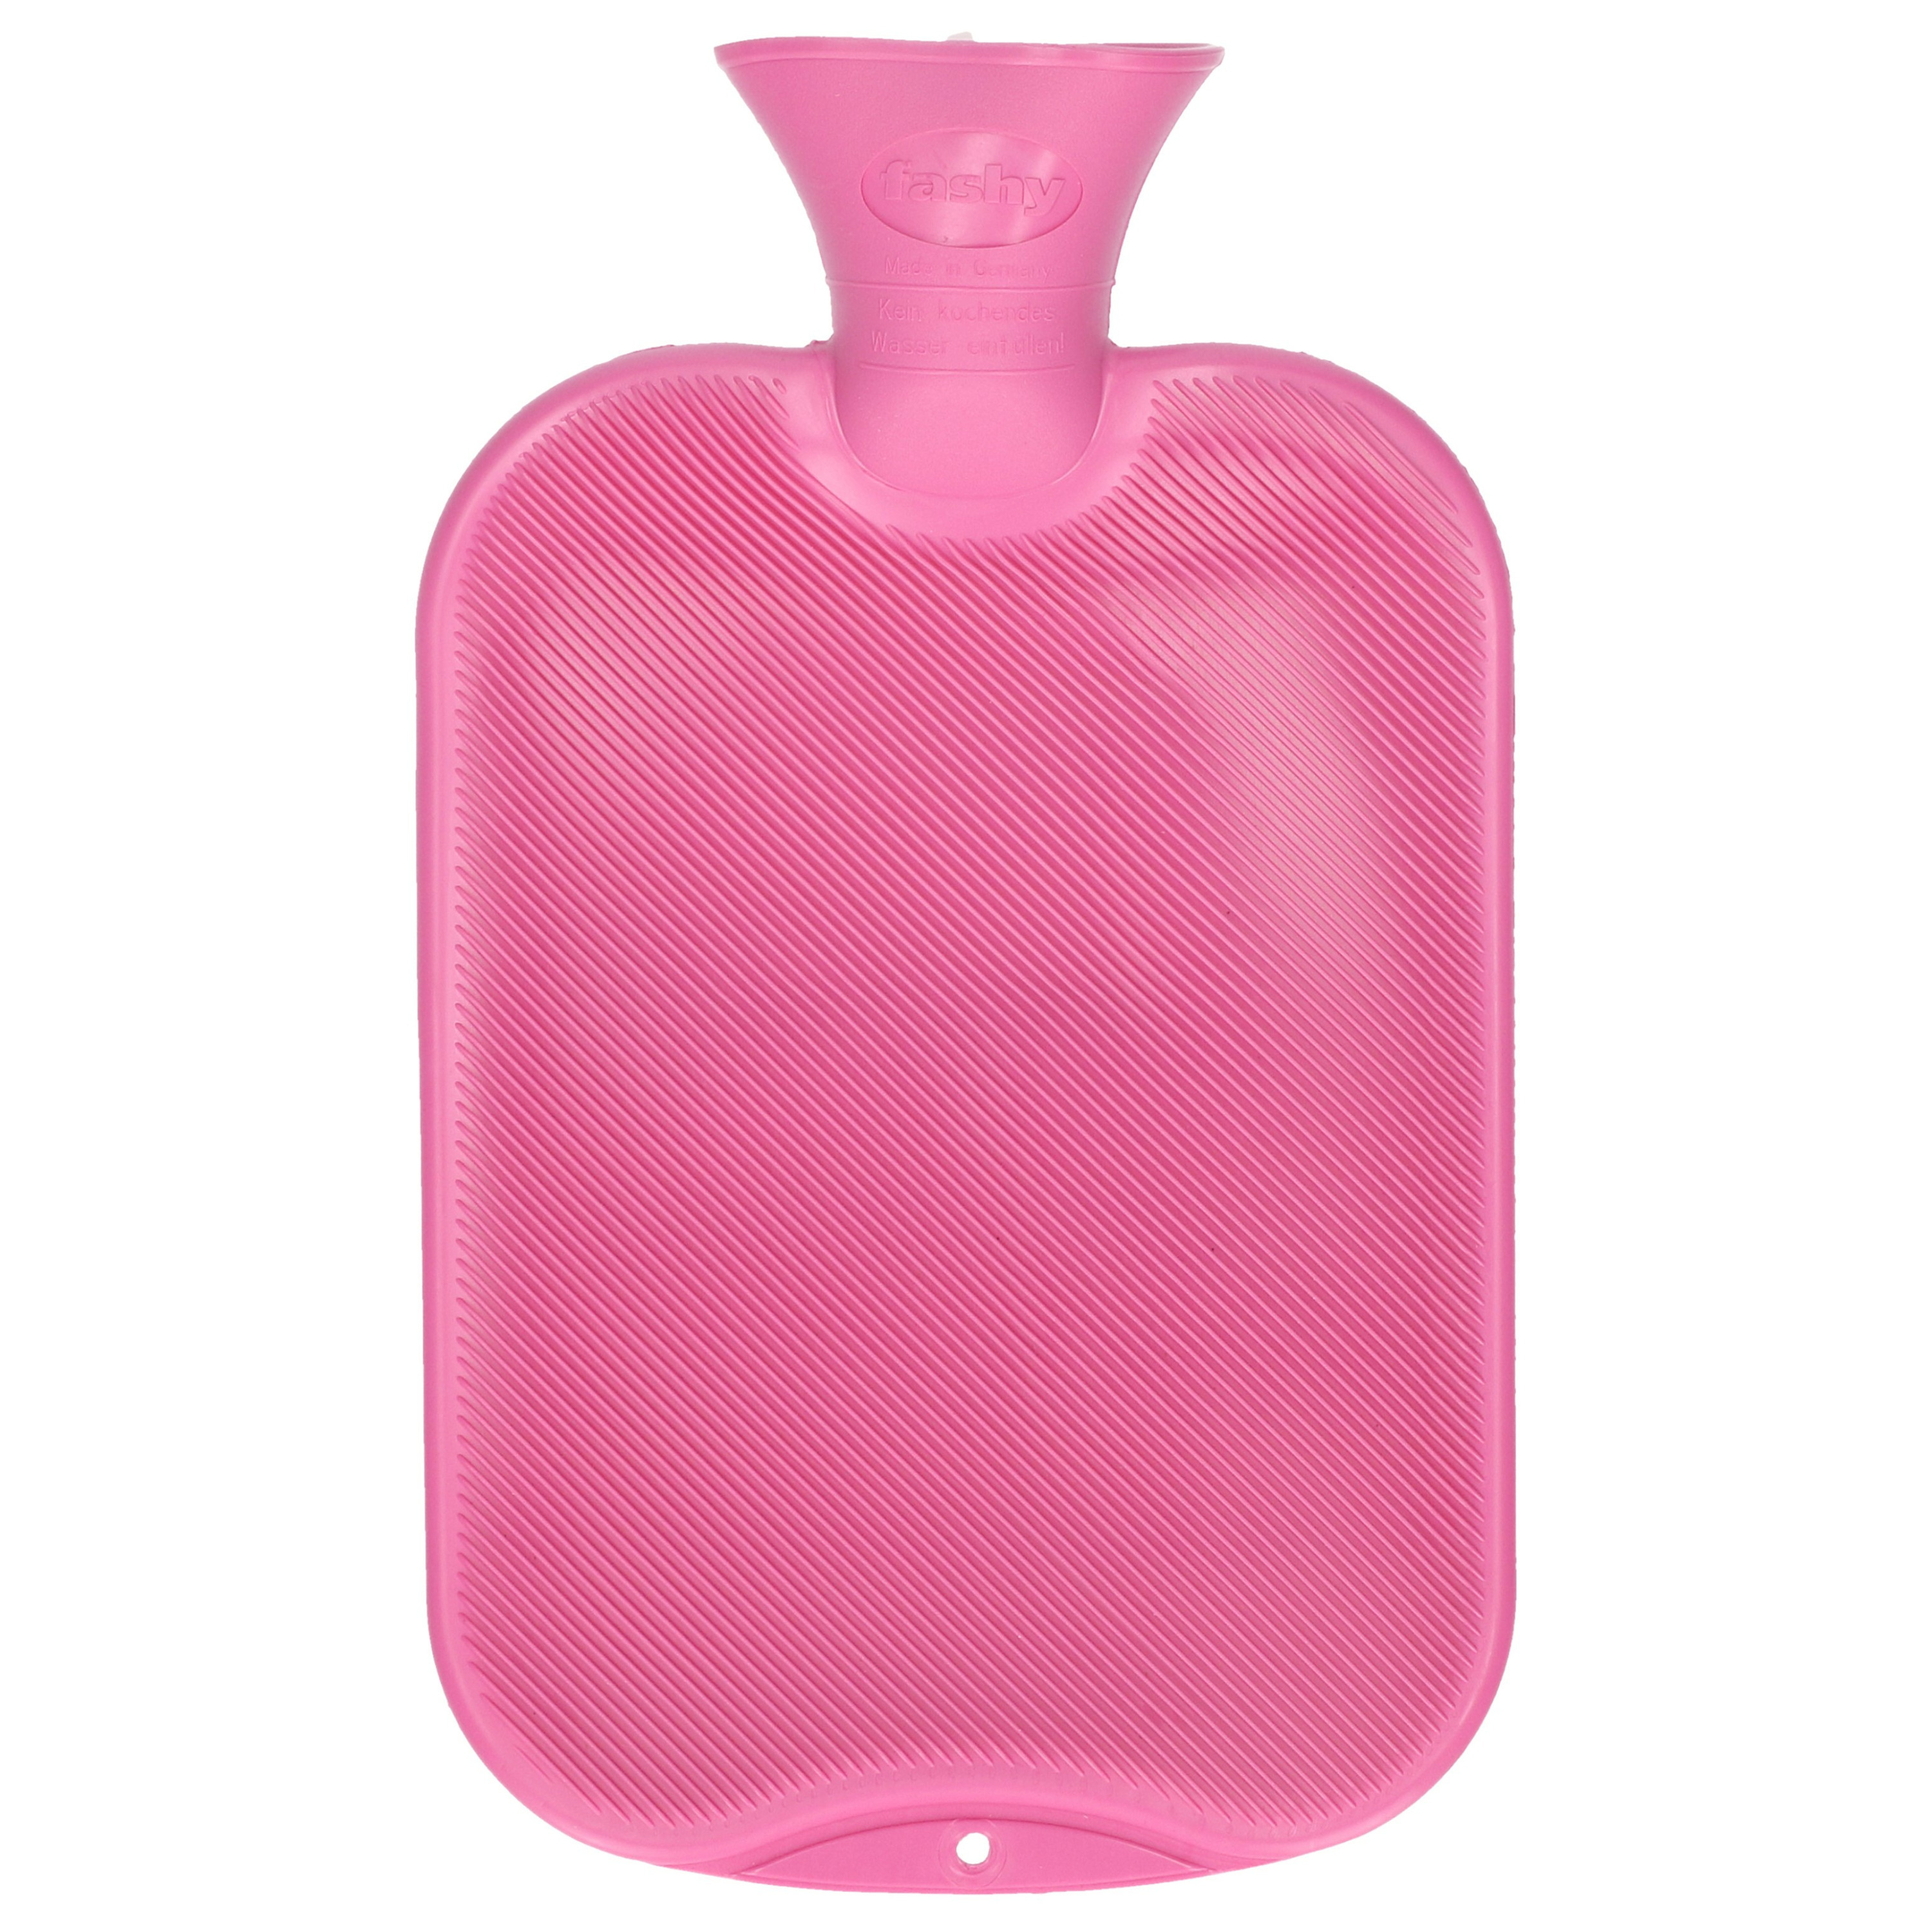 Kruik roze paars 2 liter